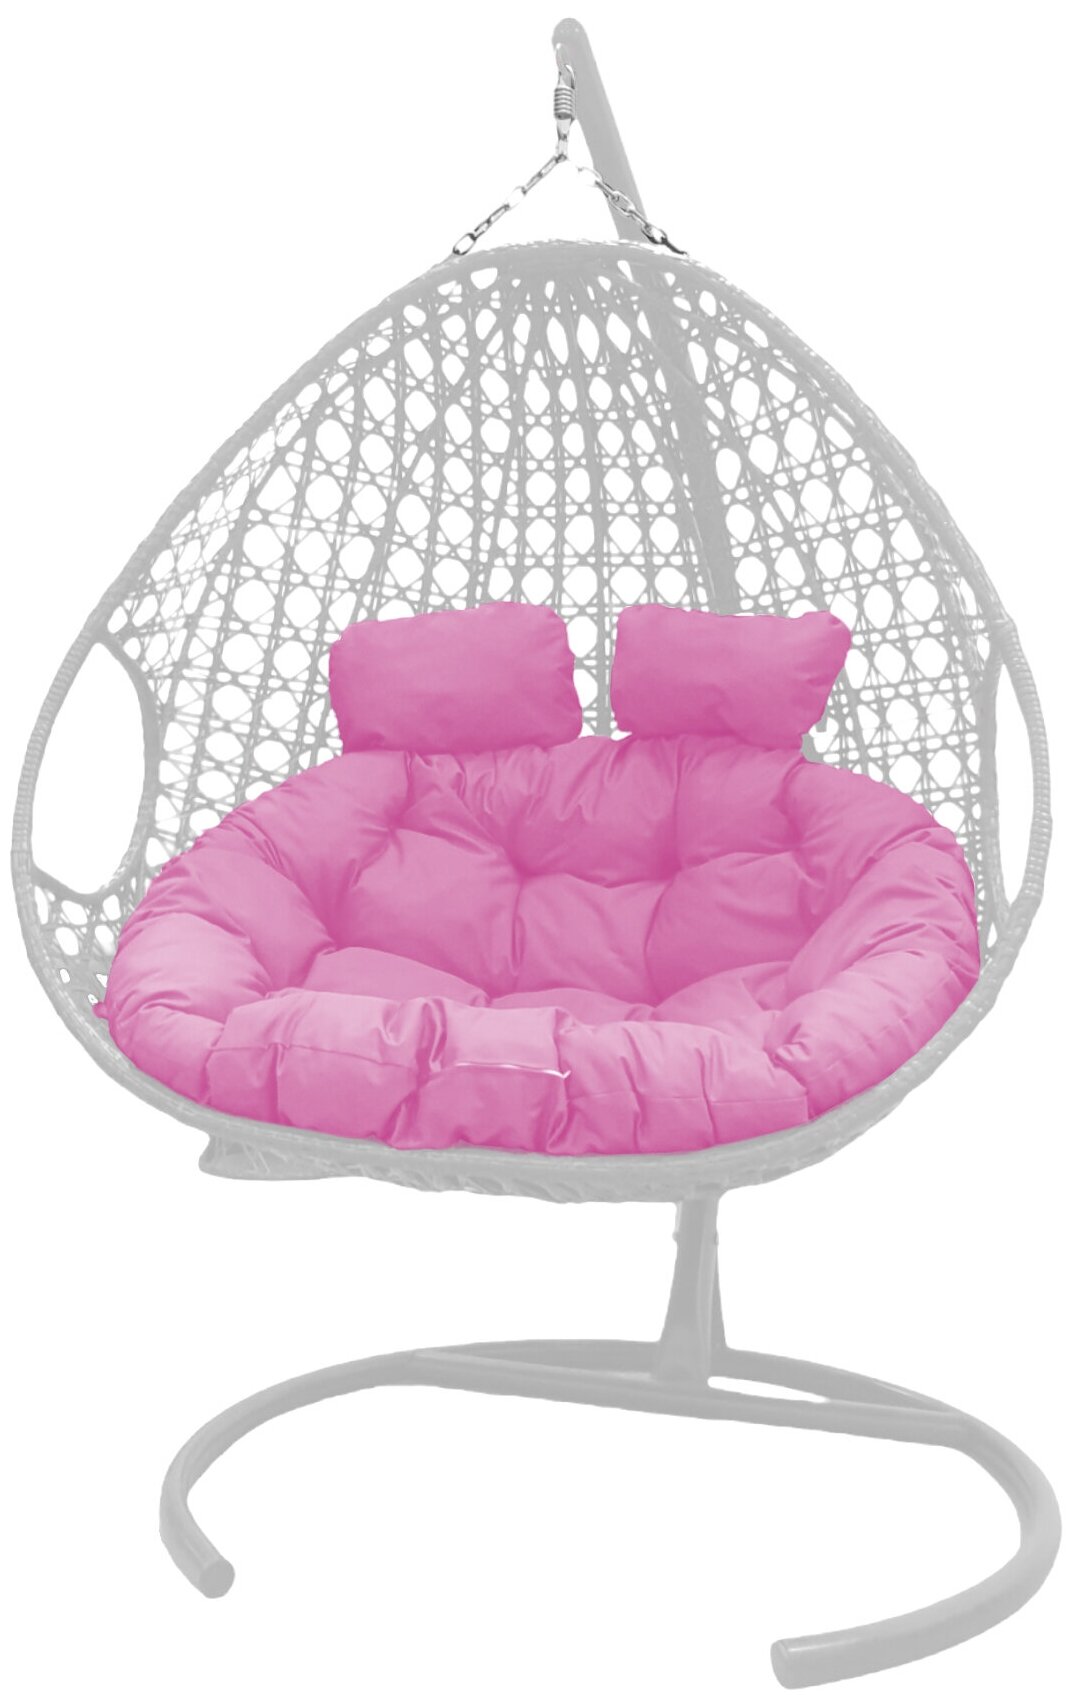 Подвесное кресло белое M-Group Для двоих люкс розовая подушка - фотография № 1